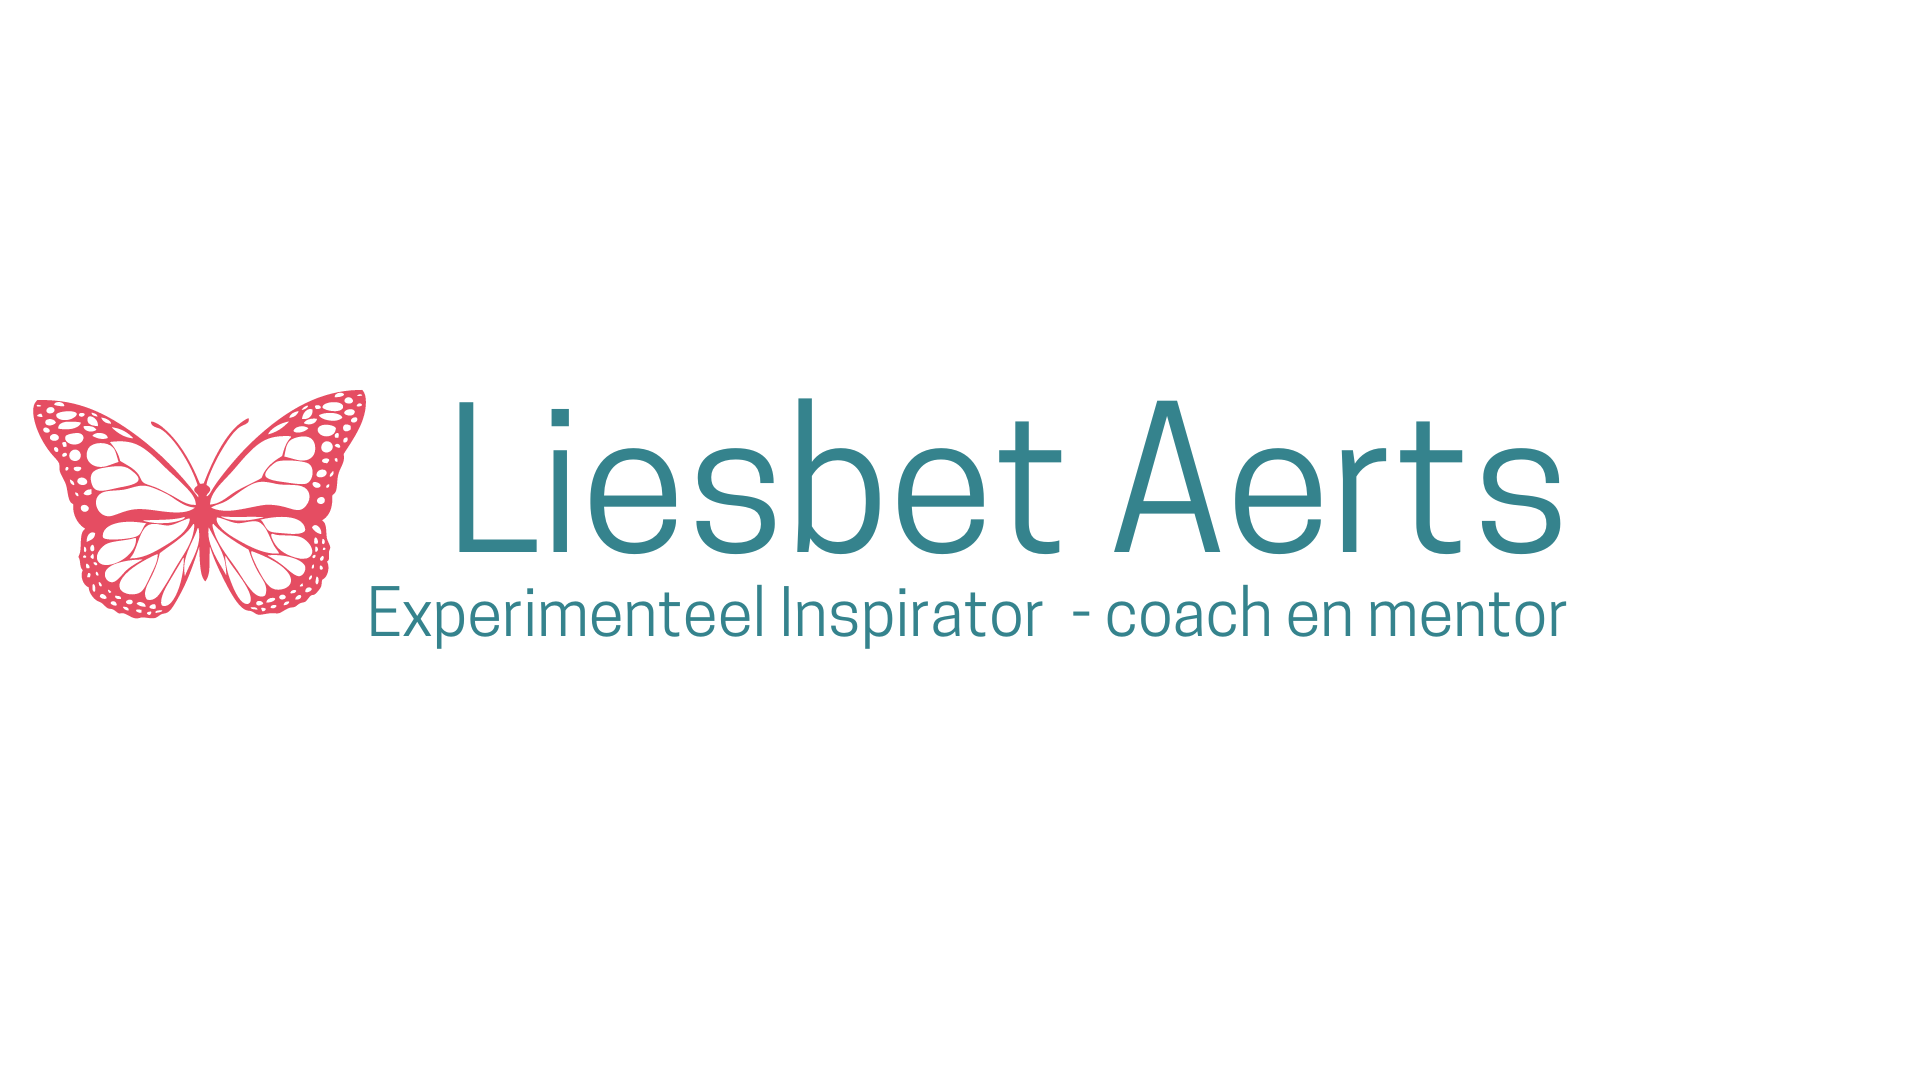 Liesbet Aerts